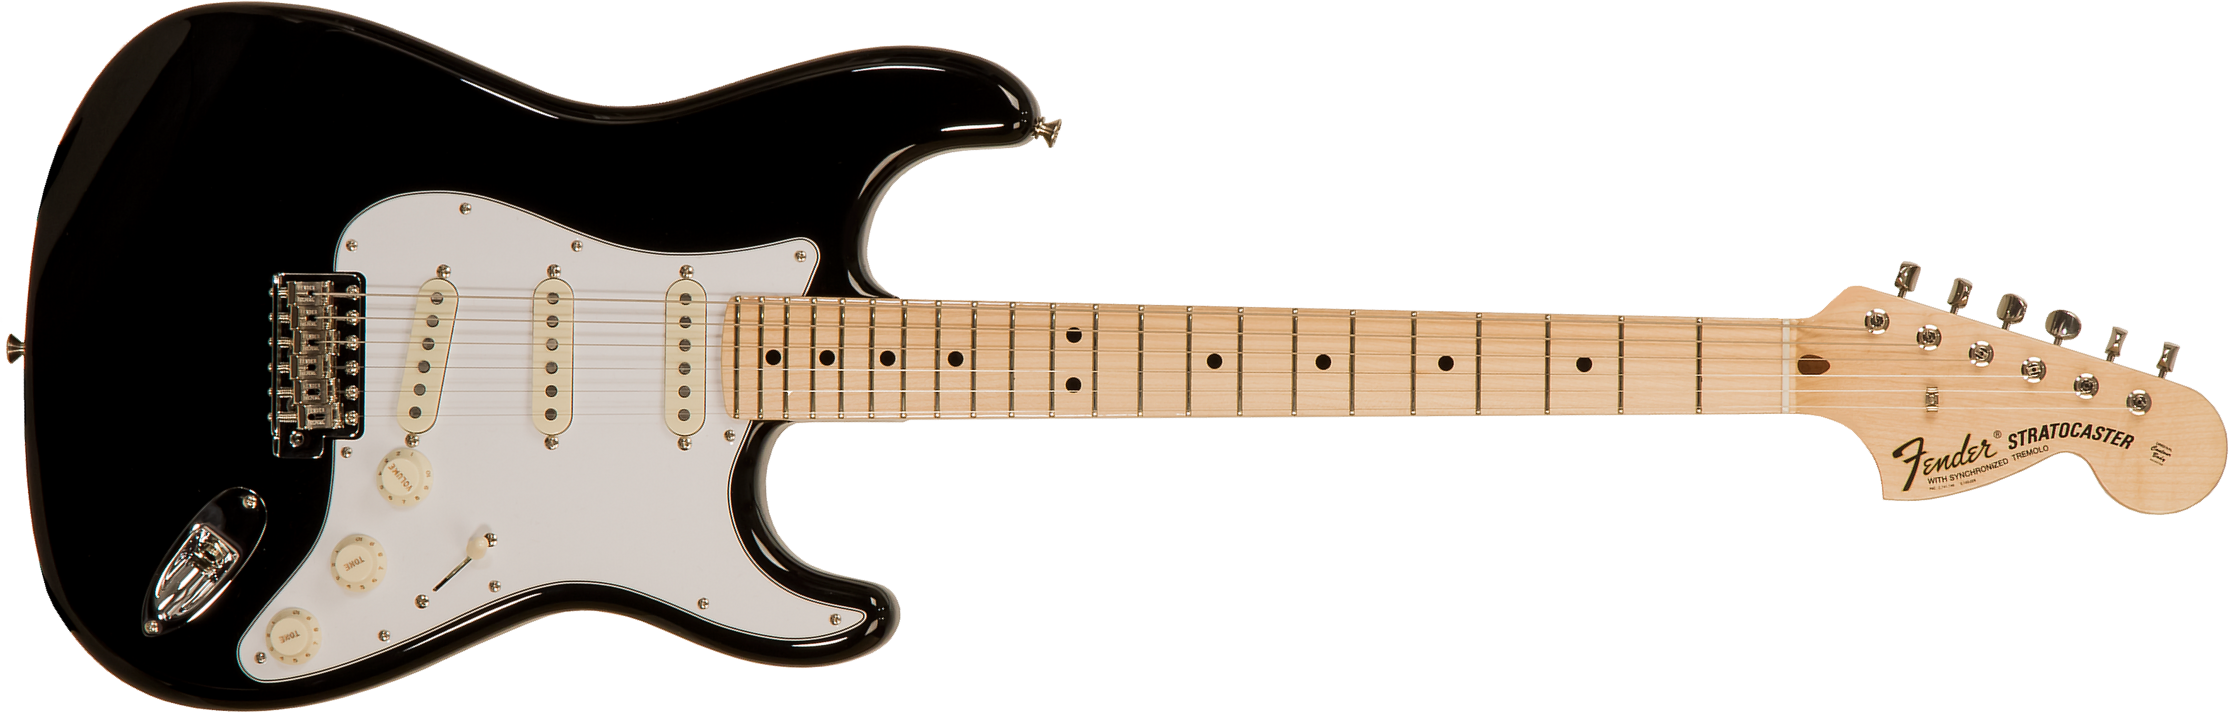 Fender Custom Shop Strat 1969 3s Trem Mn #r123423 - Nos Black - Guitare Électrique Forme Str - Main picture